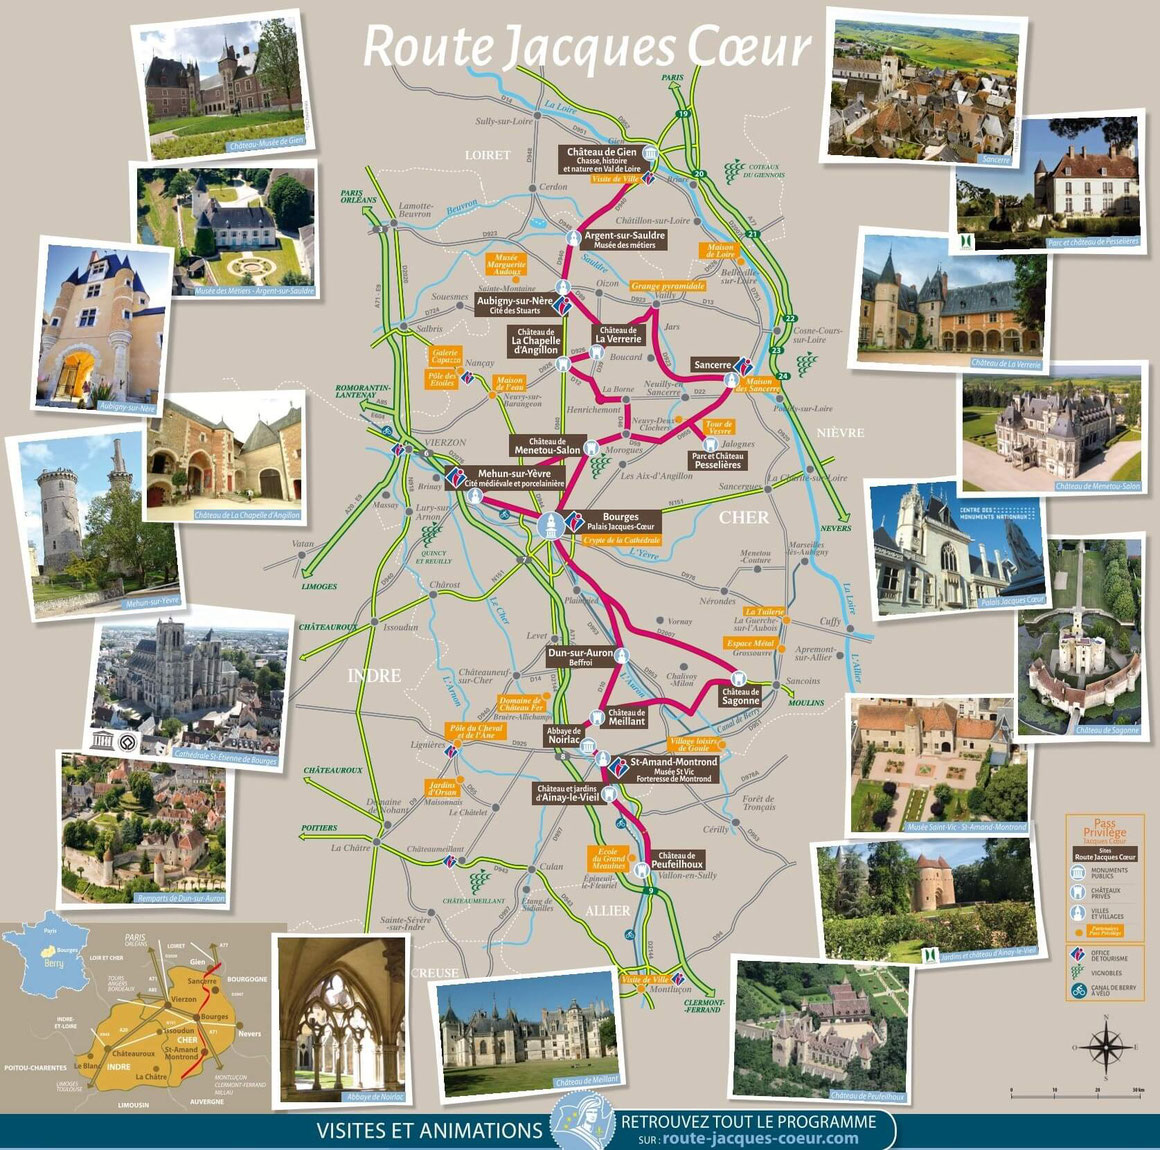 Kaart van de kastelen op de Route Jacques Coeur